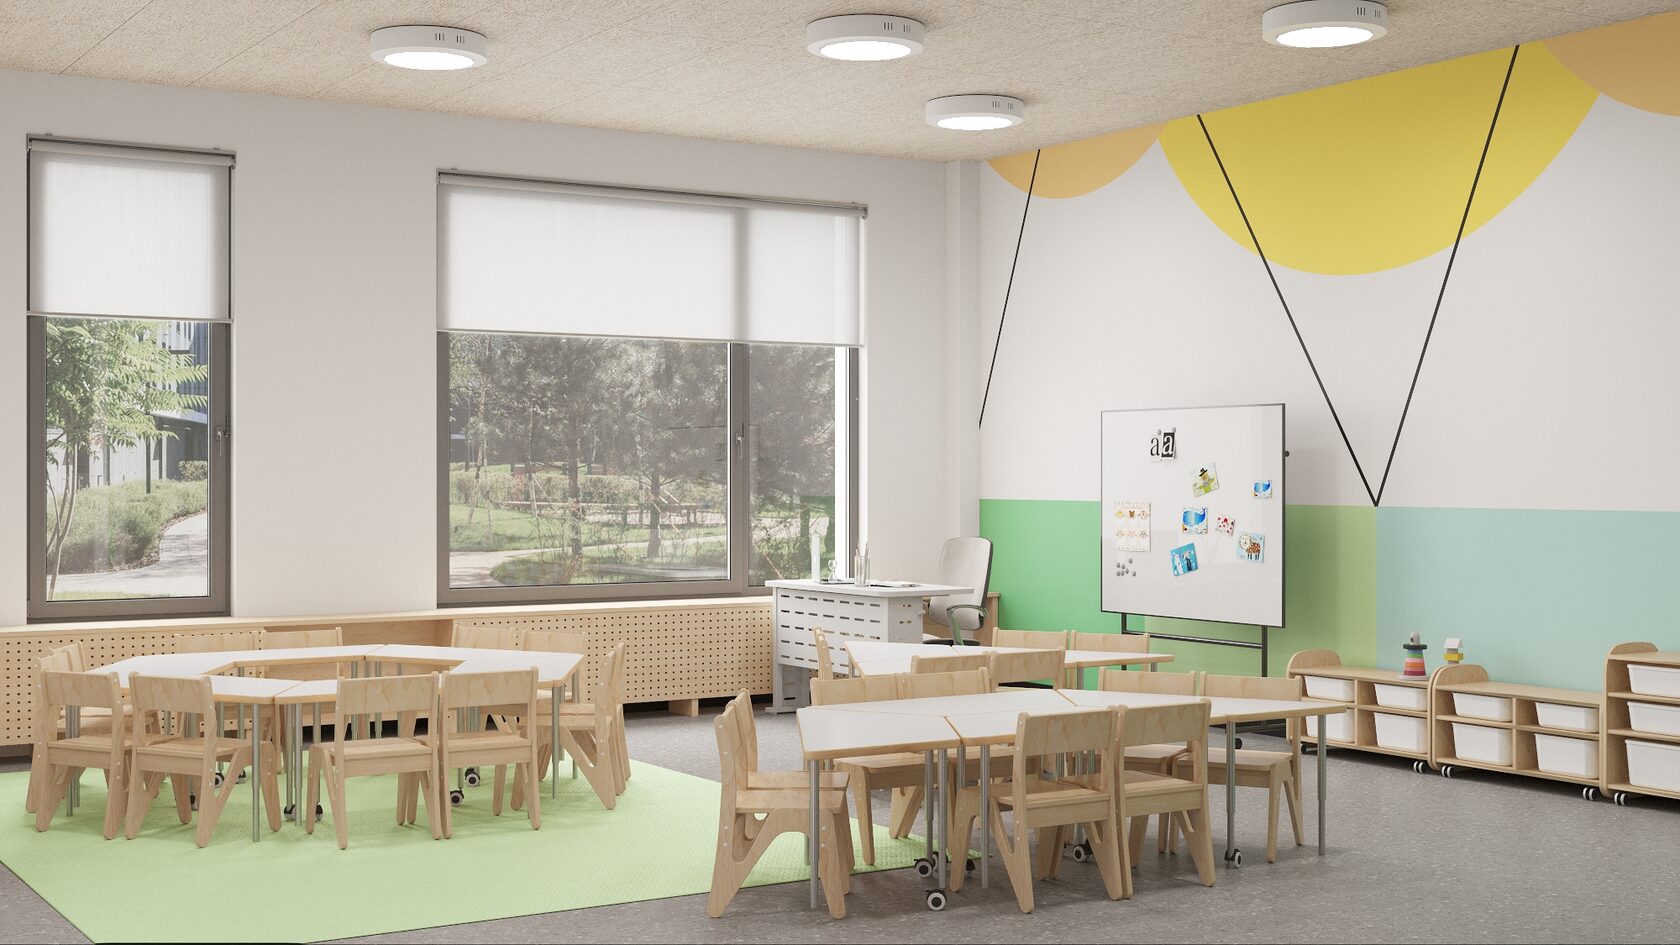 Дизайн проект рекреации детского сада до 3-х лет в г. Усть-Каменогорске